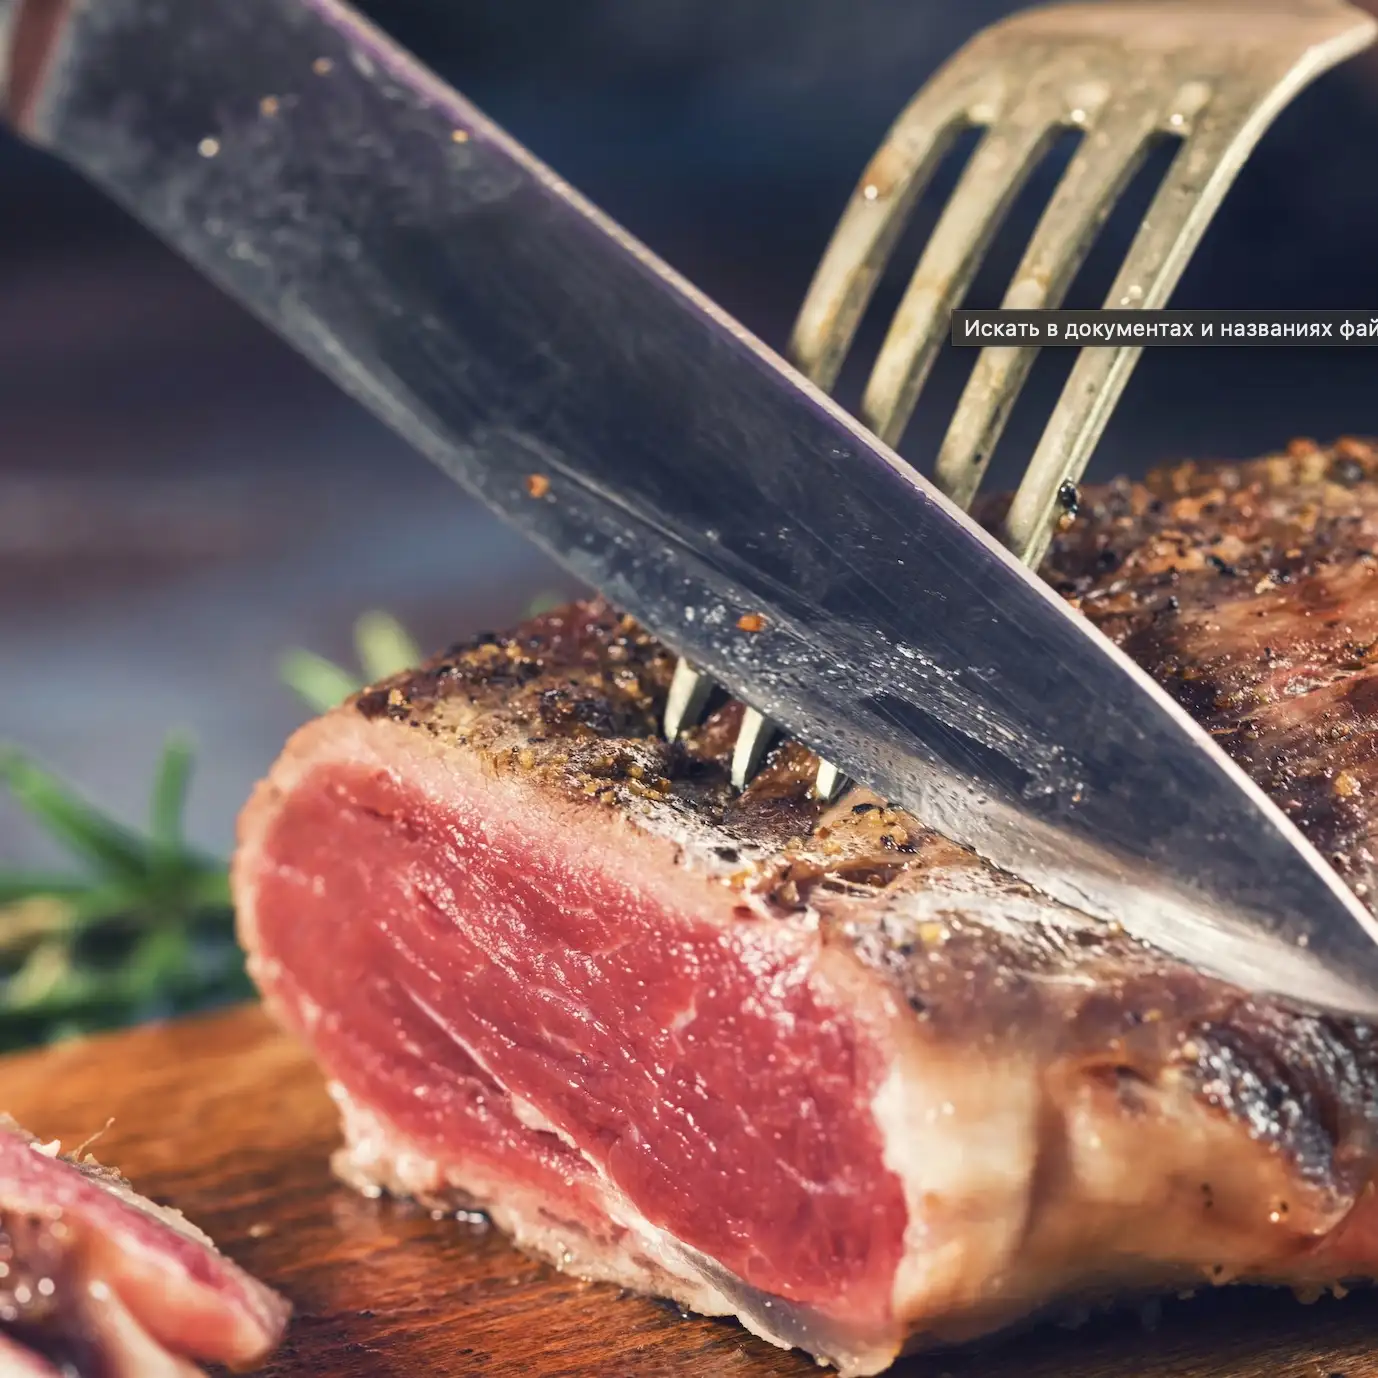 Связь между употреблением красного мяса